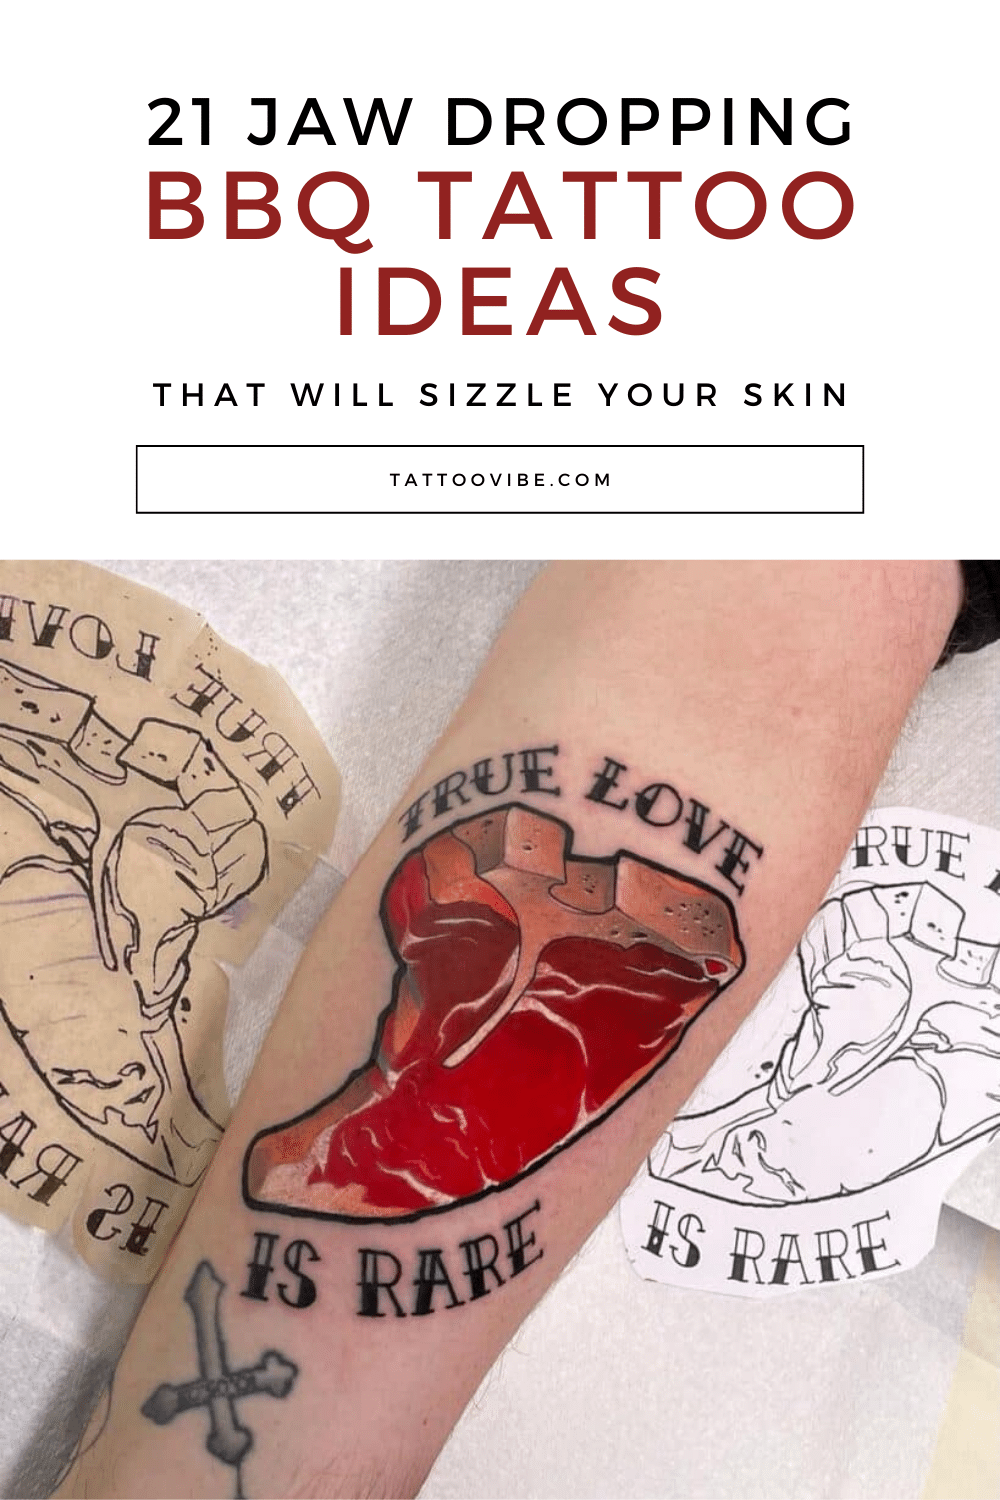 21 ideias de tatuagens de churrasco de cair o queixo que vão deixar a sua pele em polvorosa